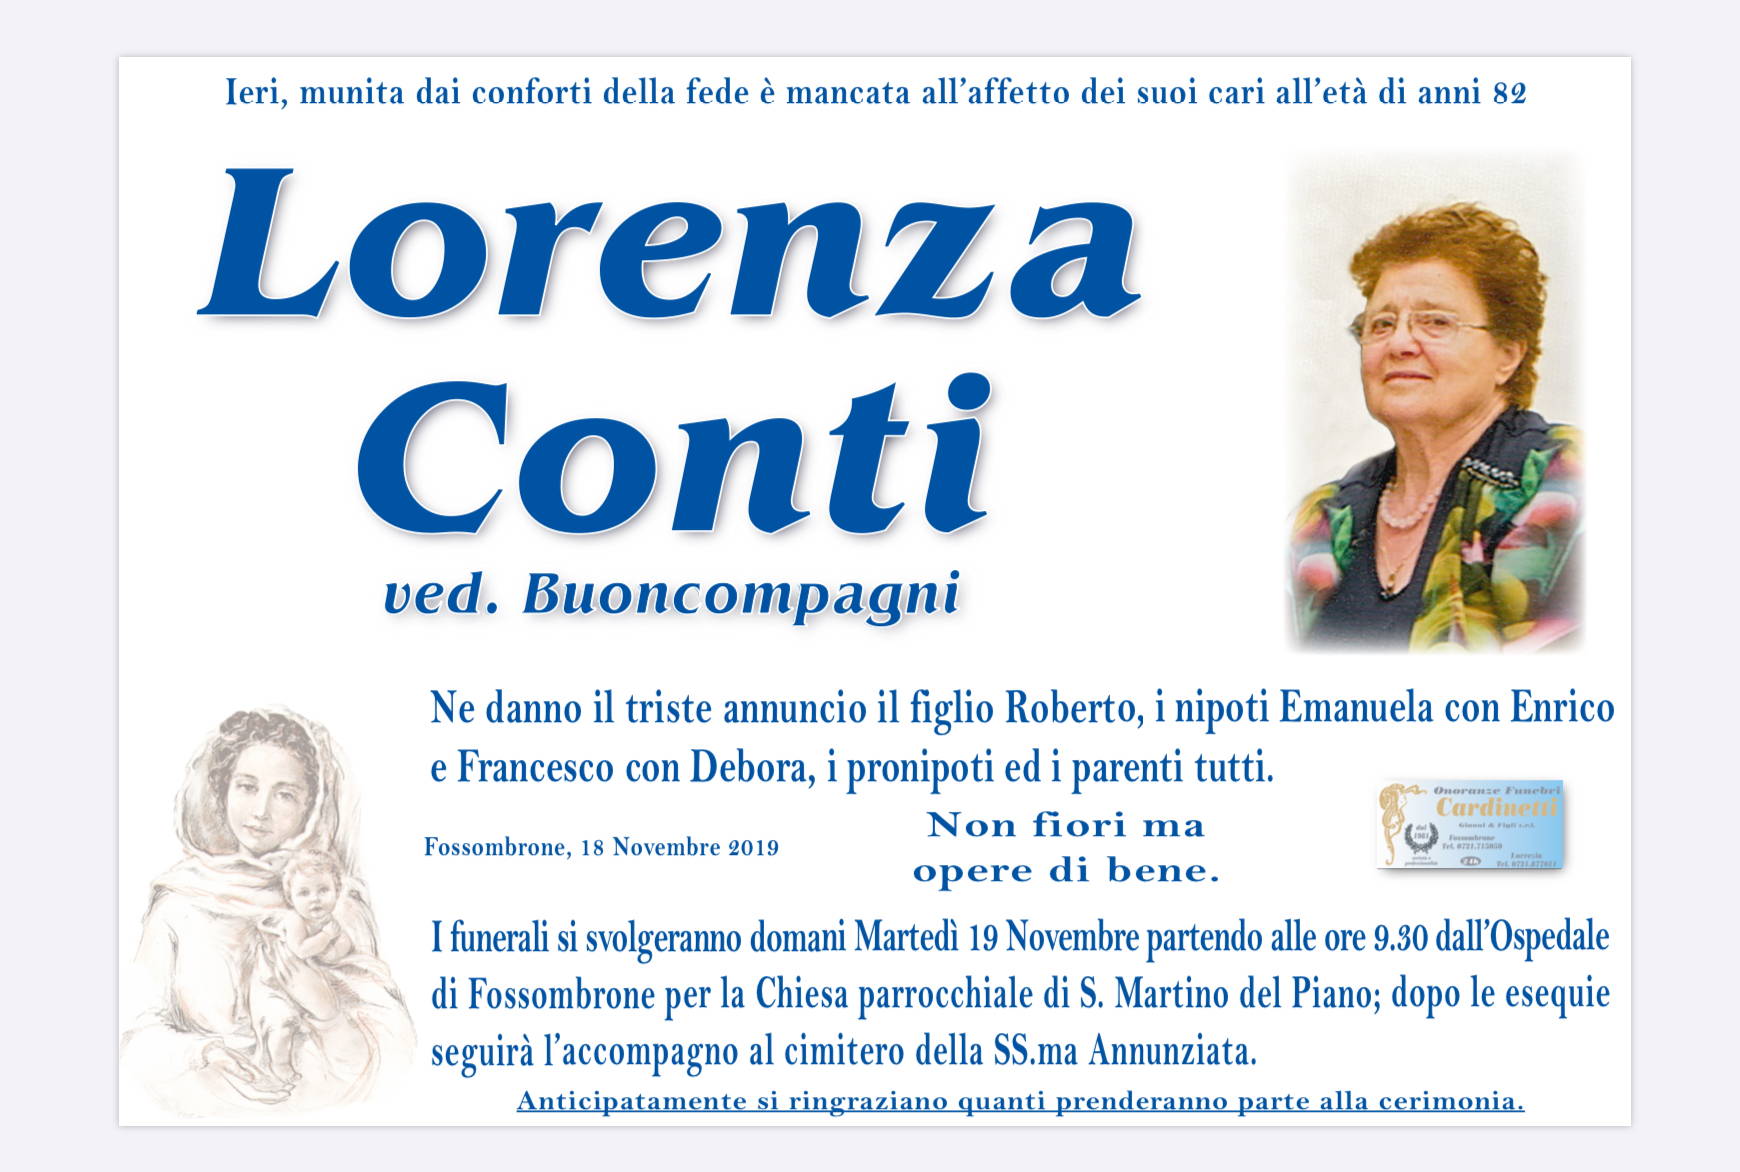 Lorenza Conti